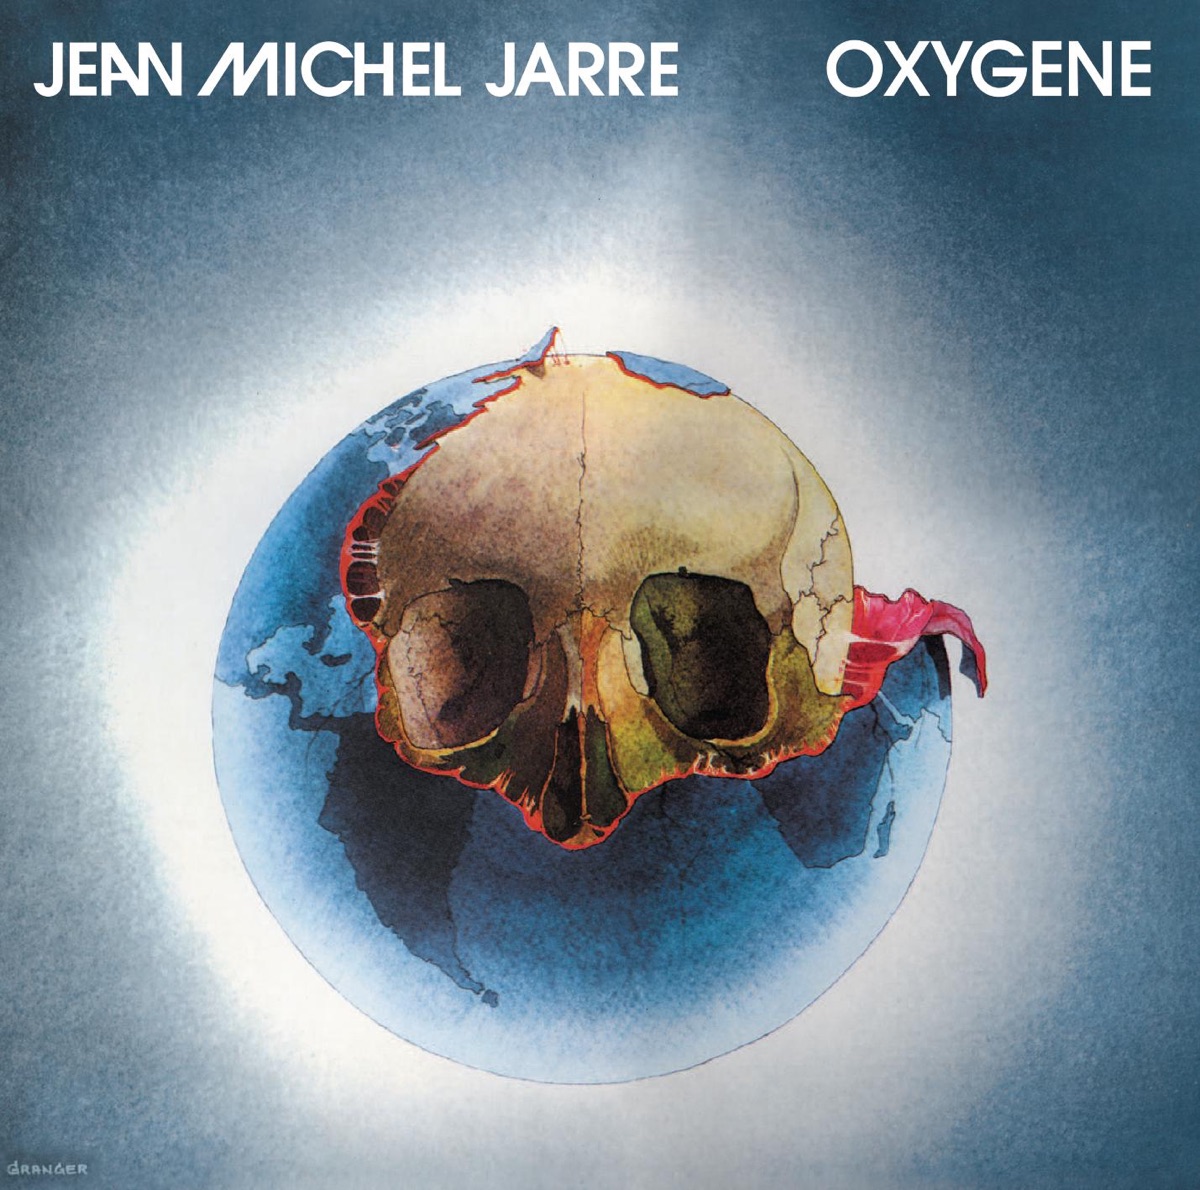 ‎Oxygène by Jean-Michel Jarre on Apple Music